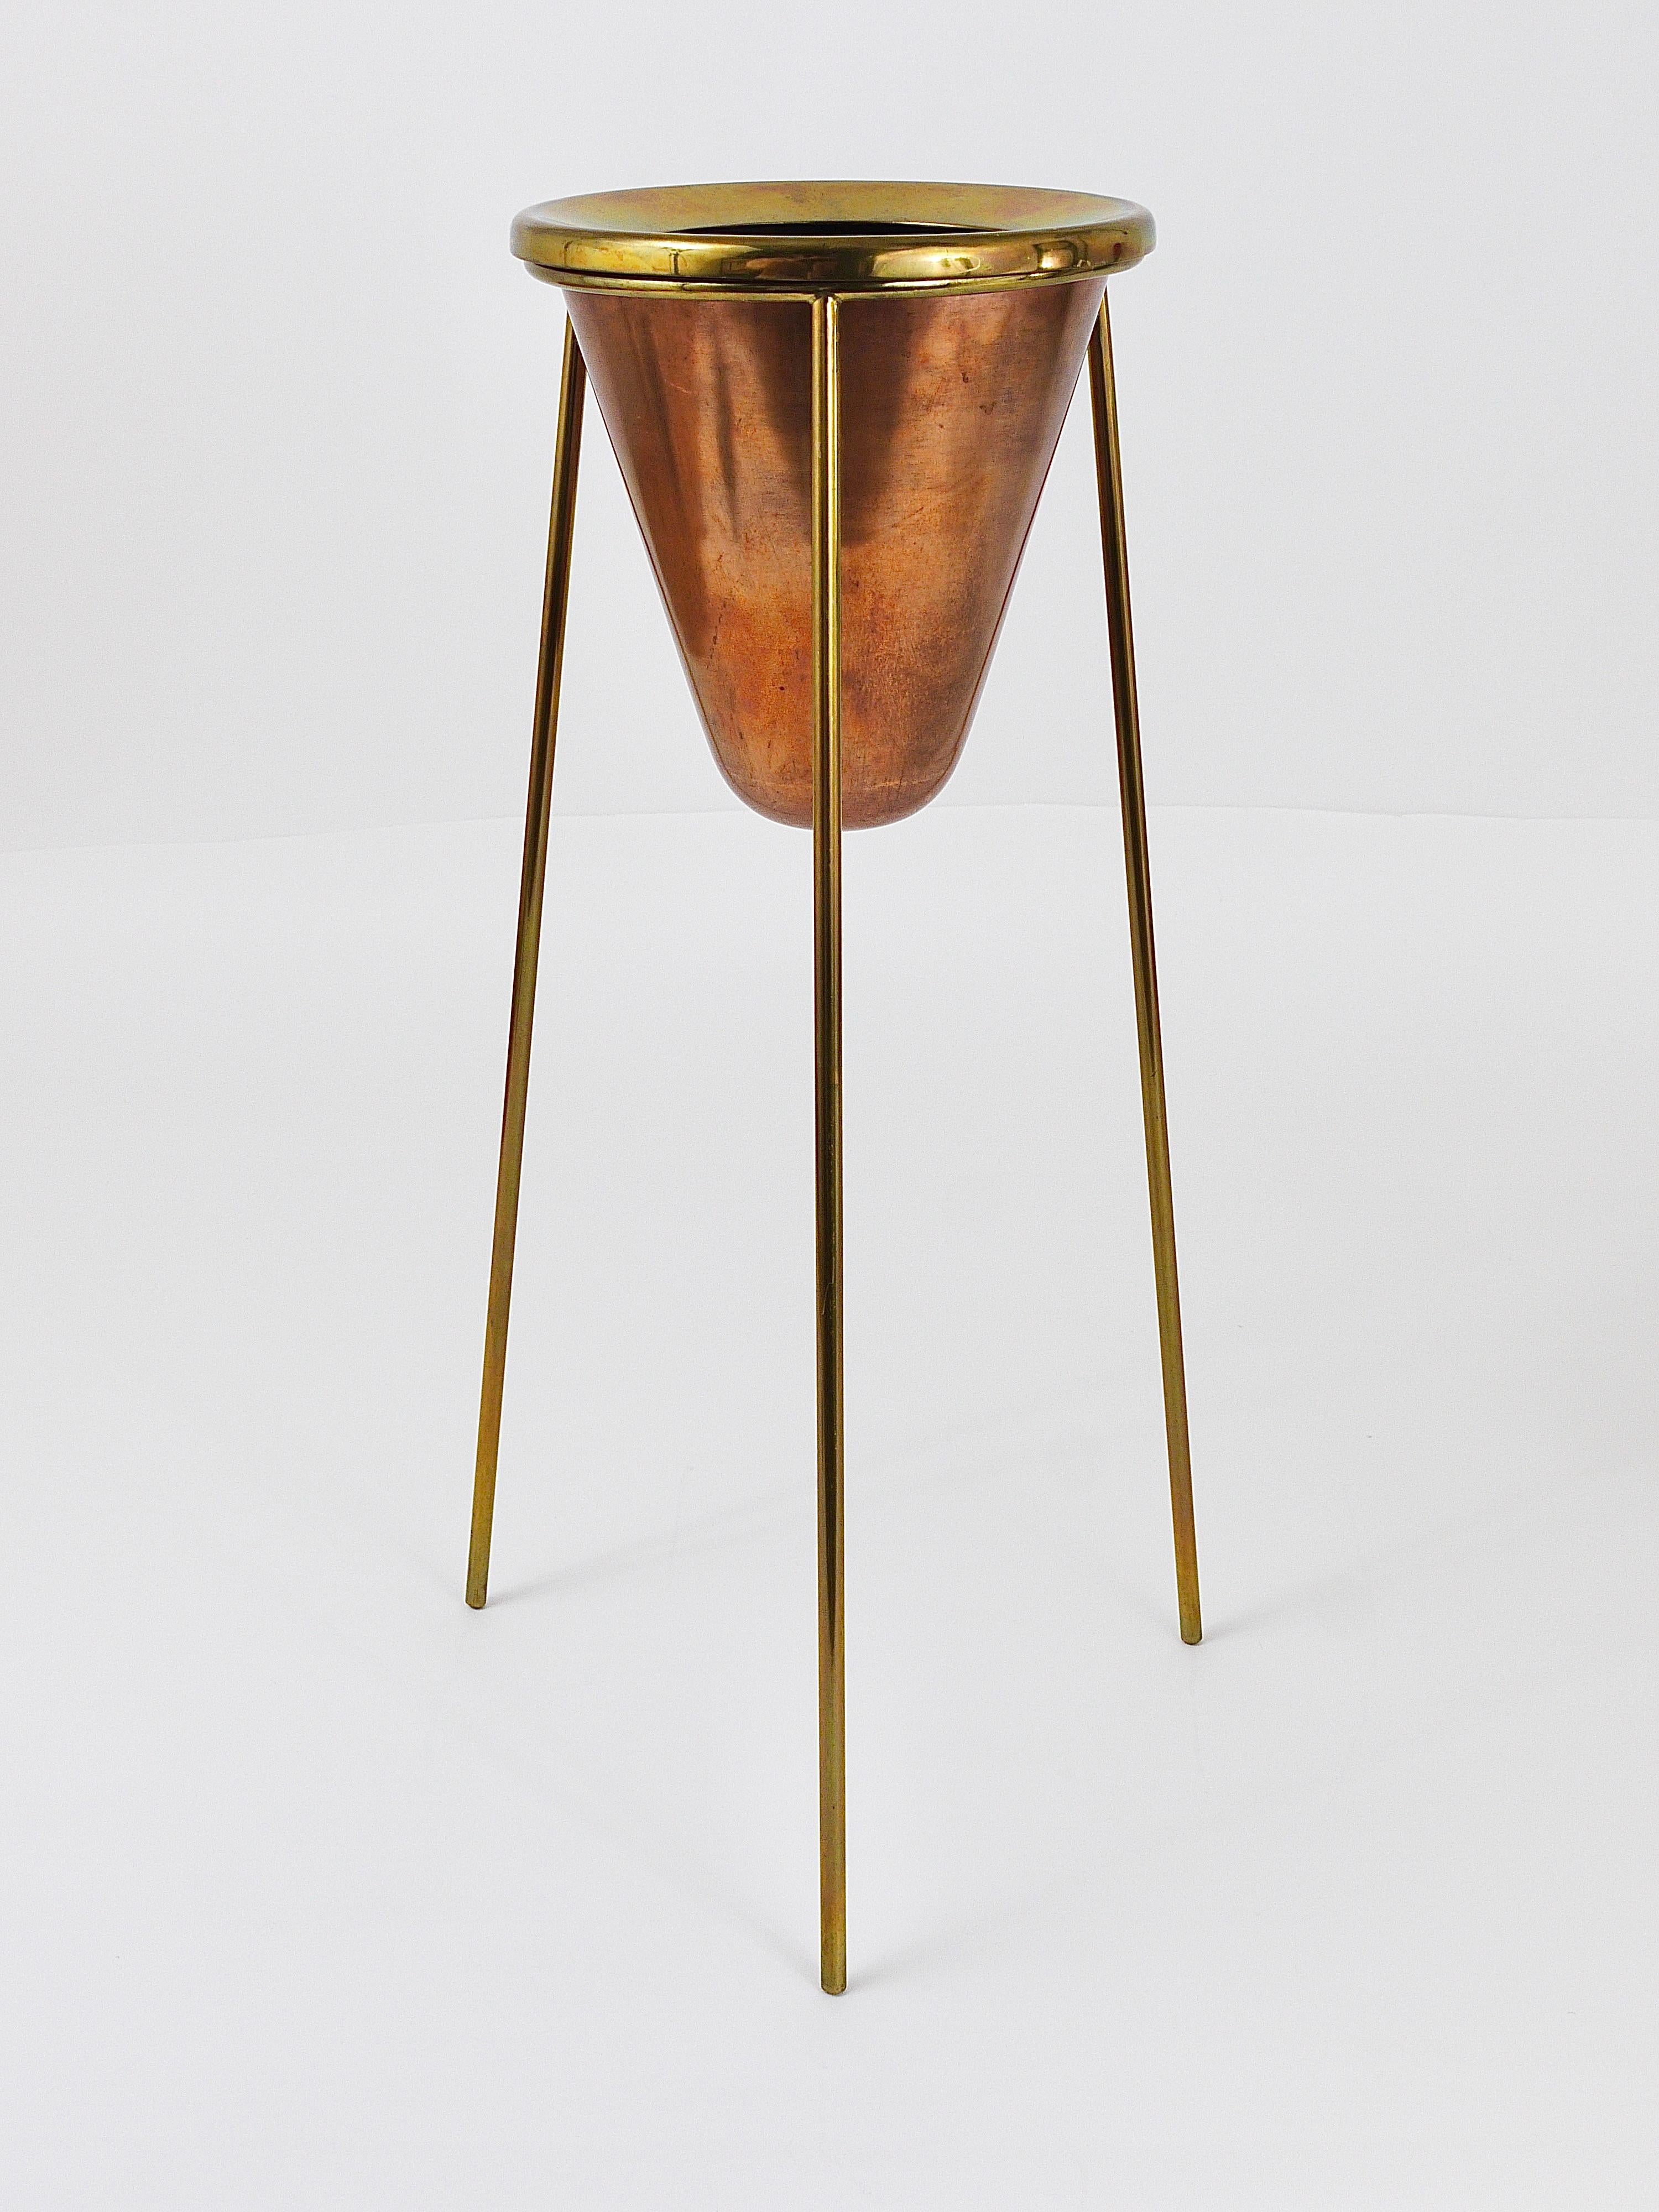 Rare Carl Aubock Copper & Brass Tripod Floor Ashtray, Austria, 1950s For Sale 5